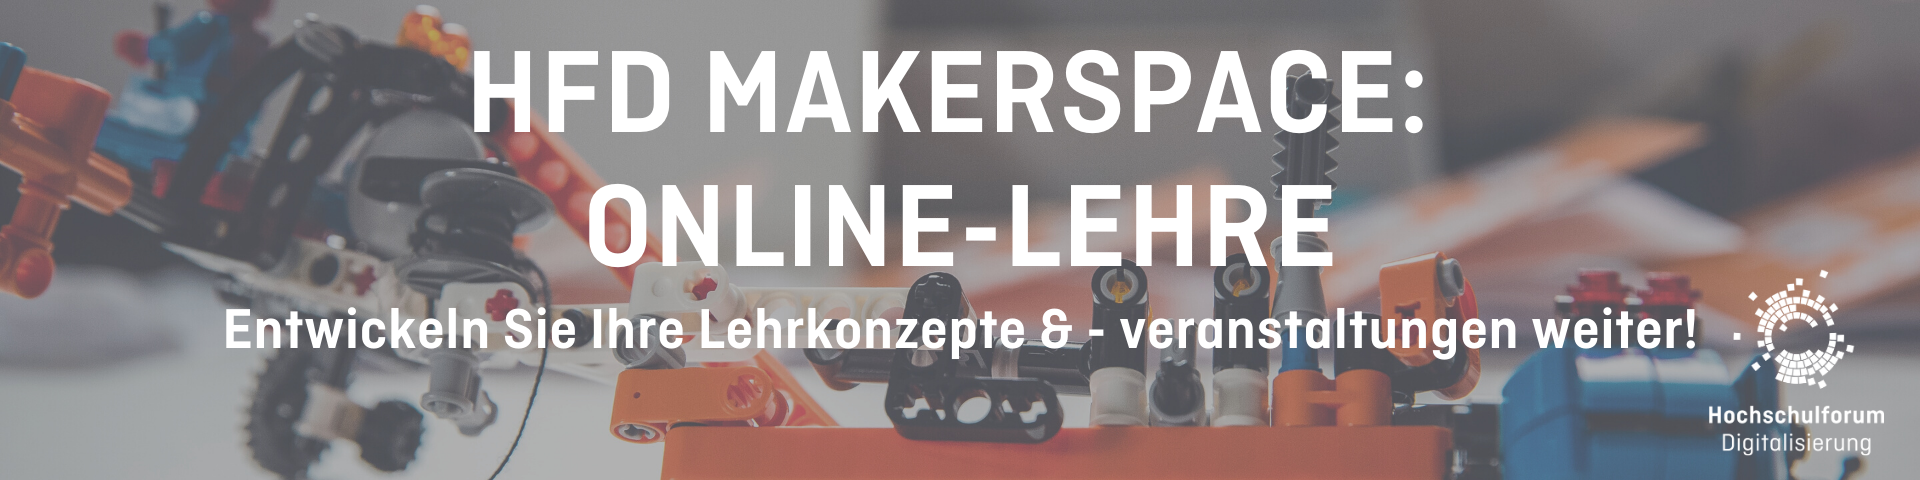 Banner für HFD Makerspace: Online-Lehre am 27.11.2020